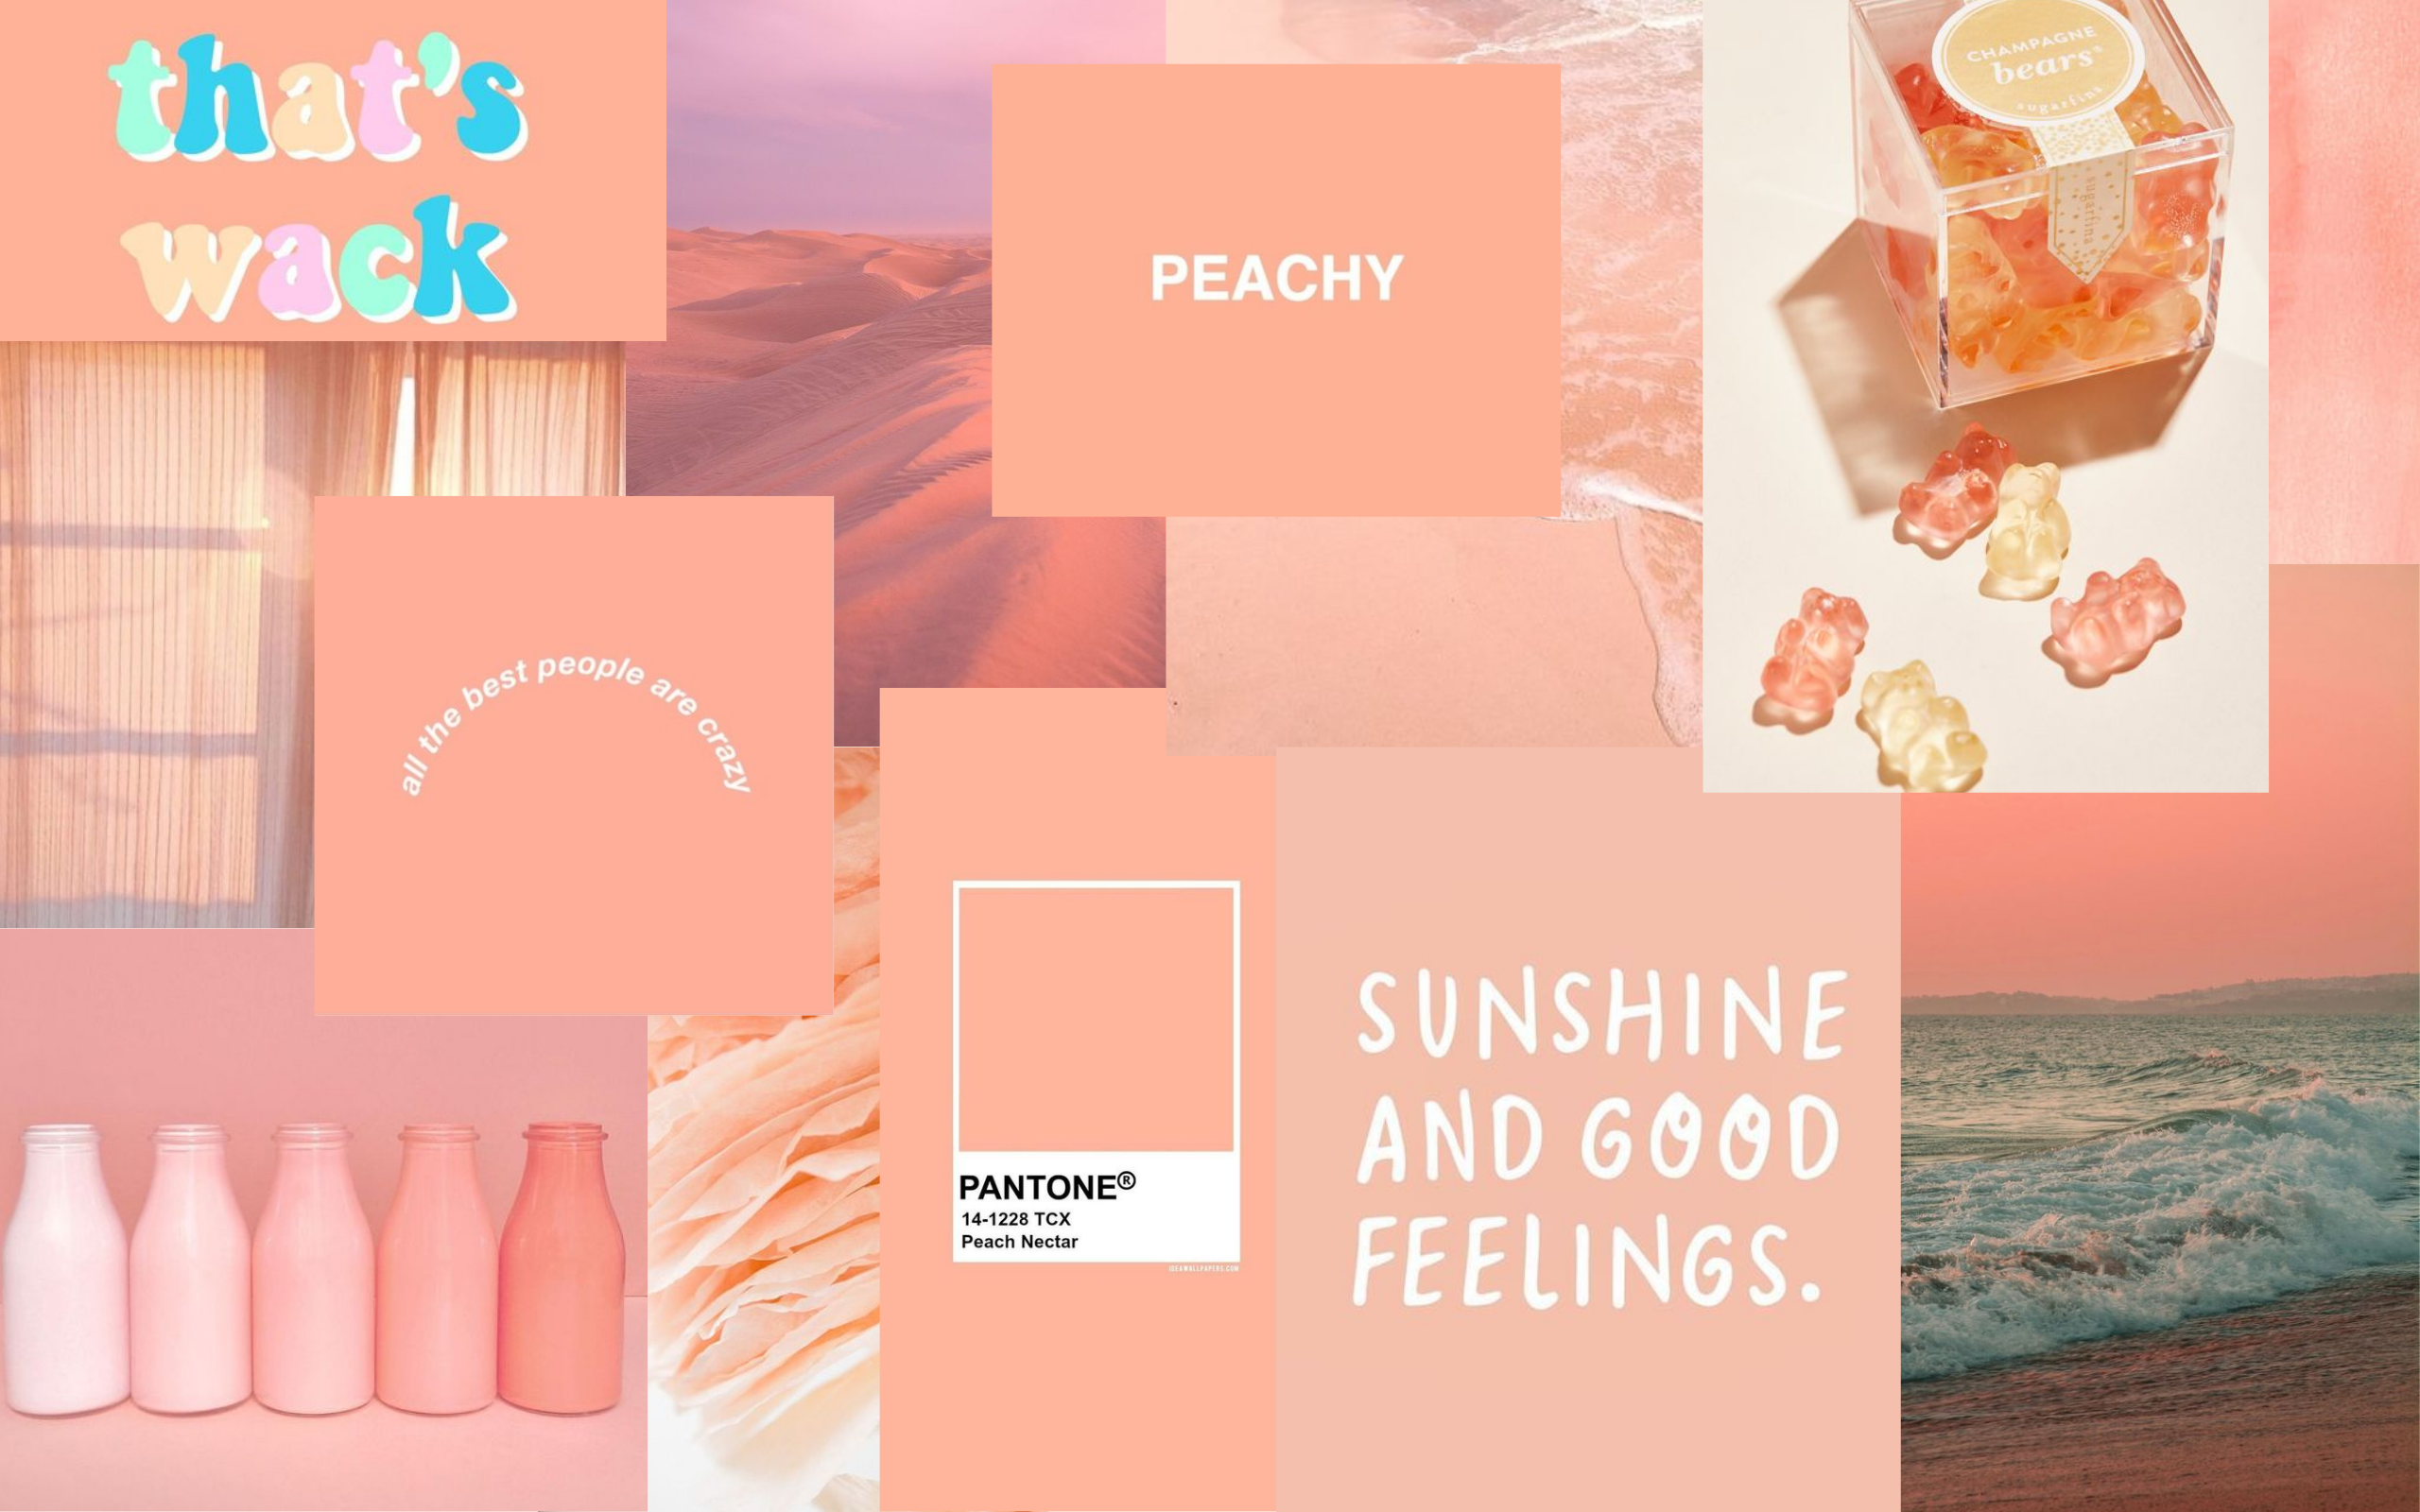 peach aesthetic wallpaper. Aesthetic desktop wallpaper, Peach wallpaper, Cute desktop wallpaper